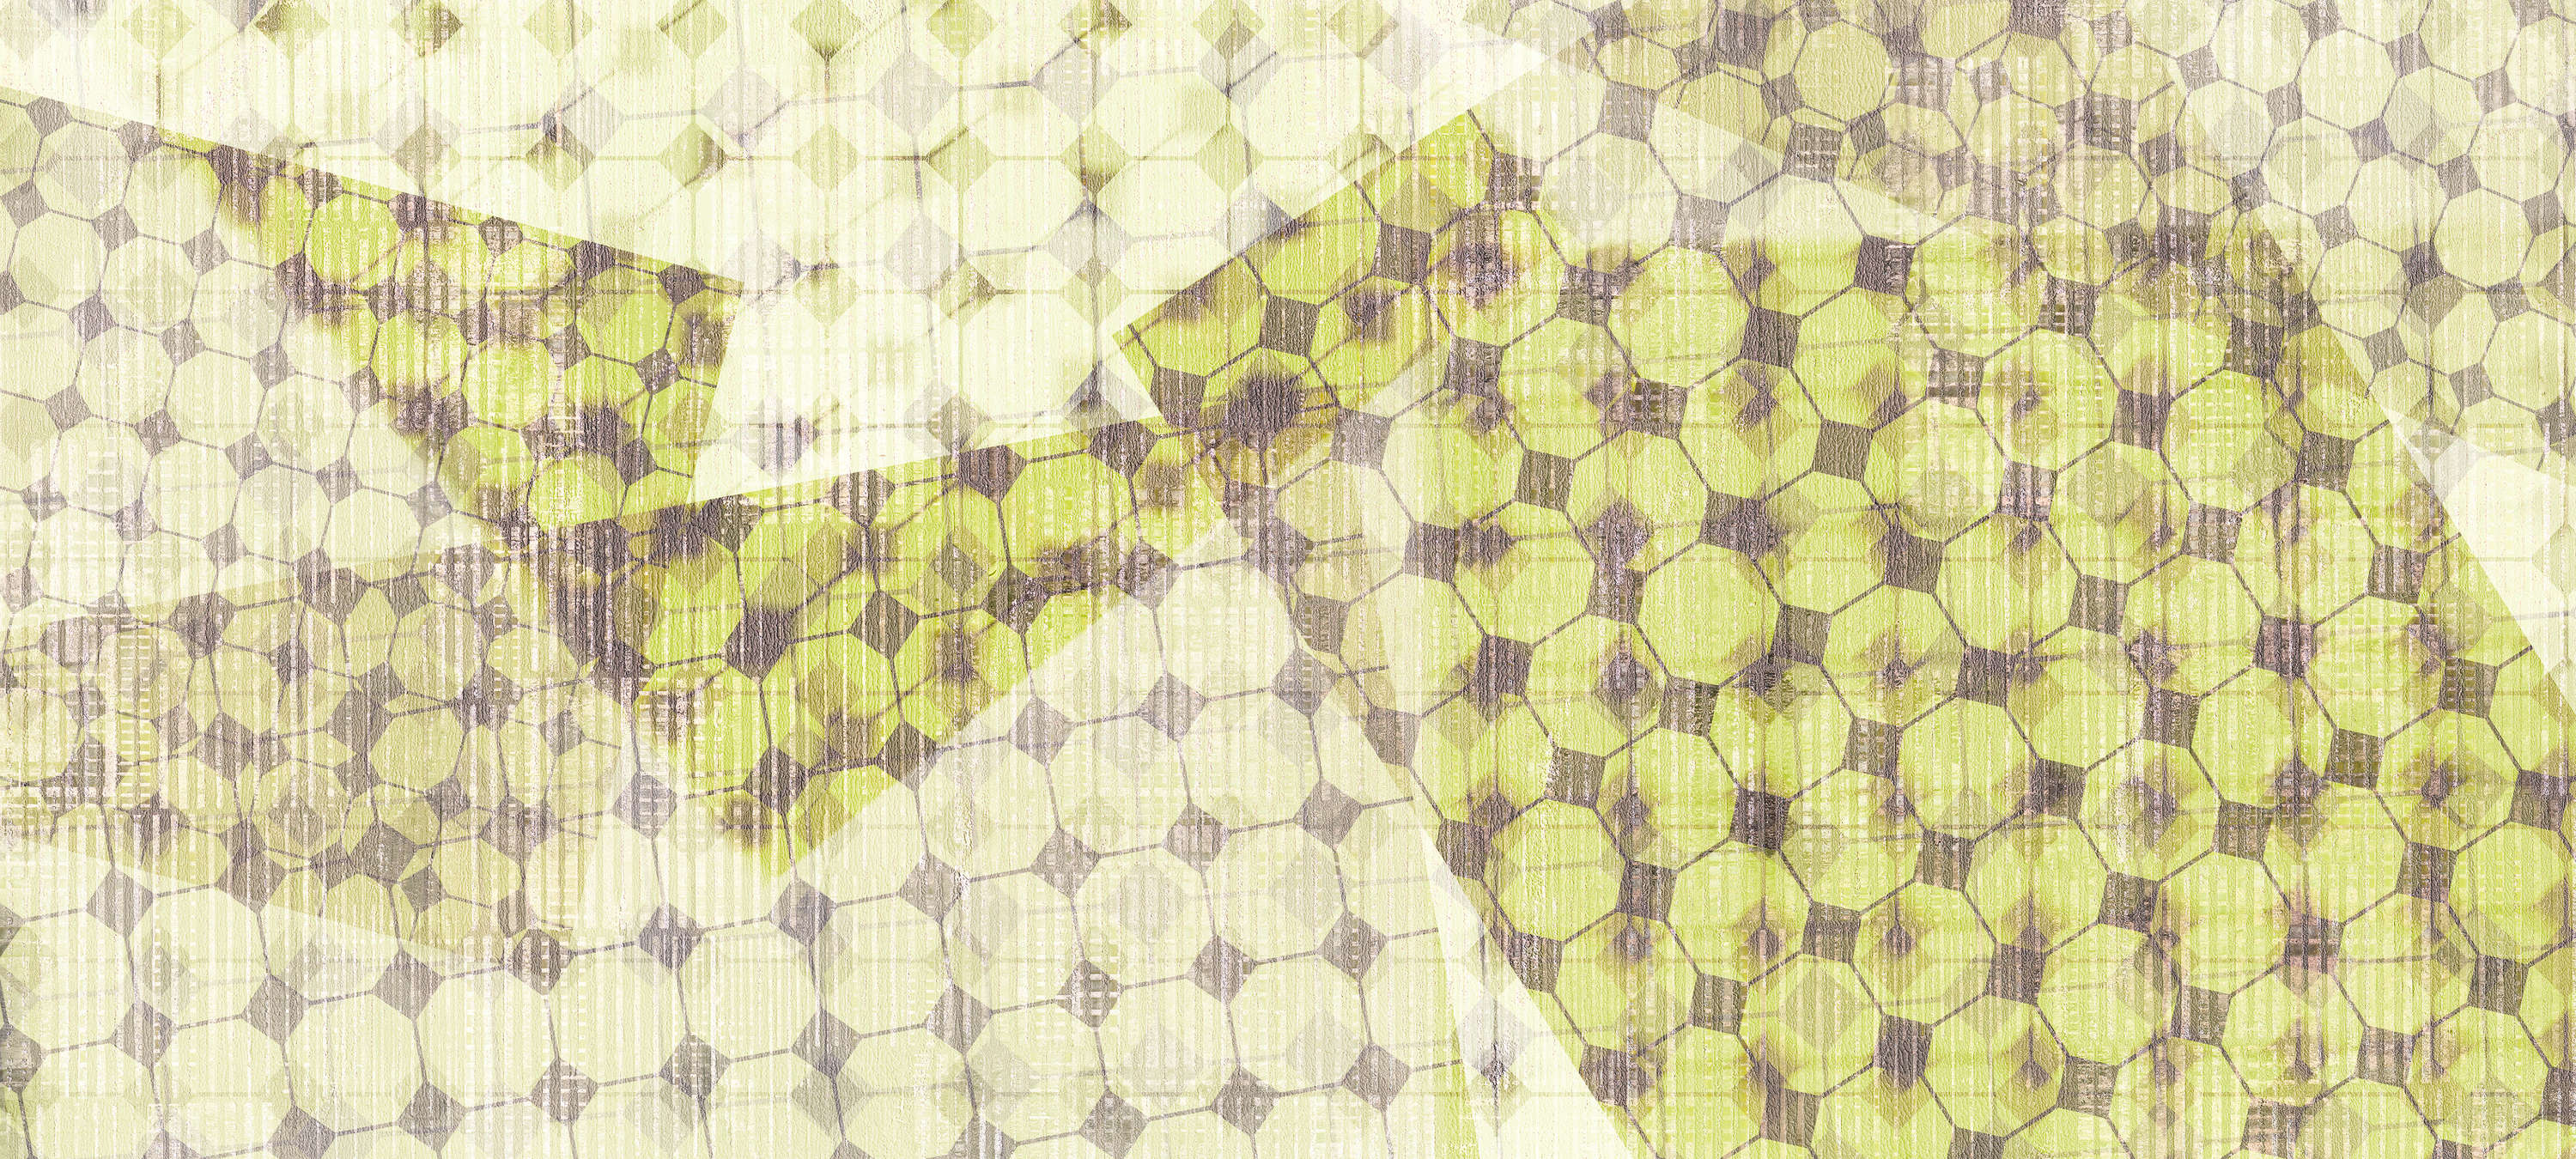             Fototapete geometrisches Muster & Layer-Effekt – Grün, Weiß, Schwarz
        